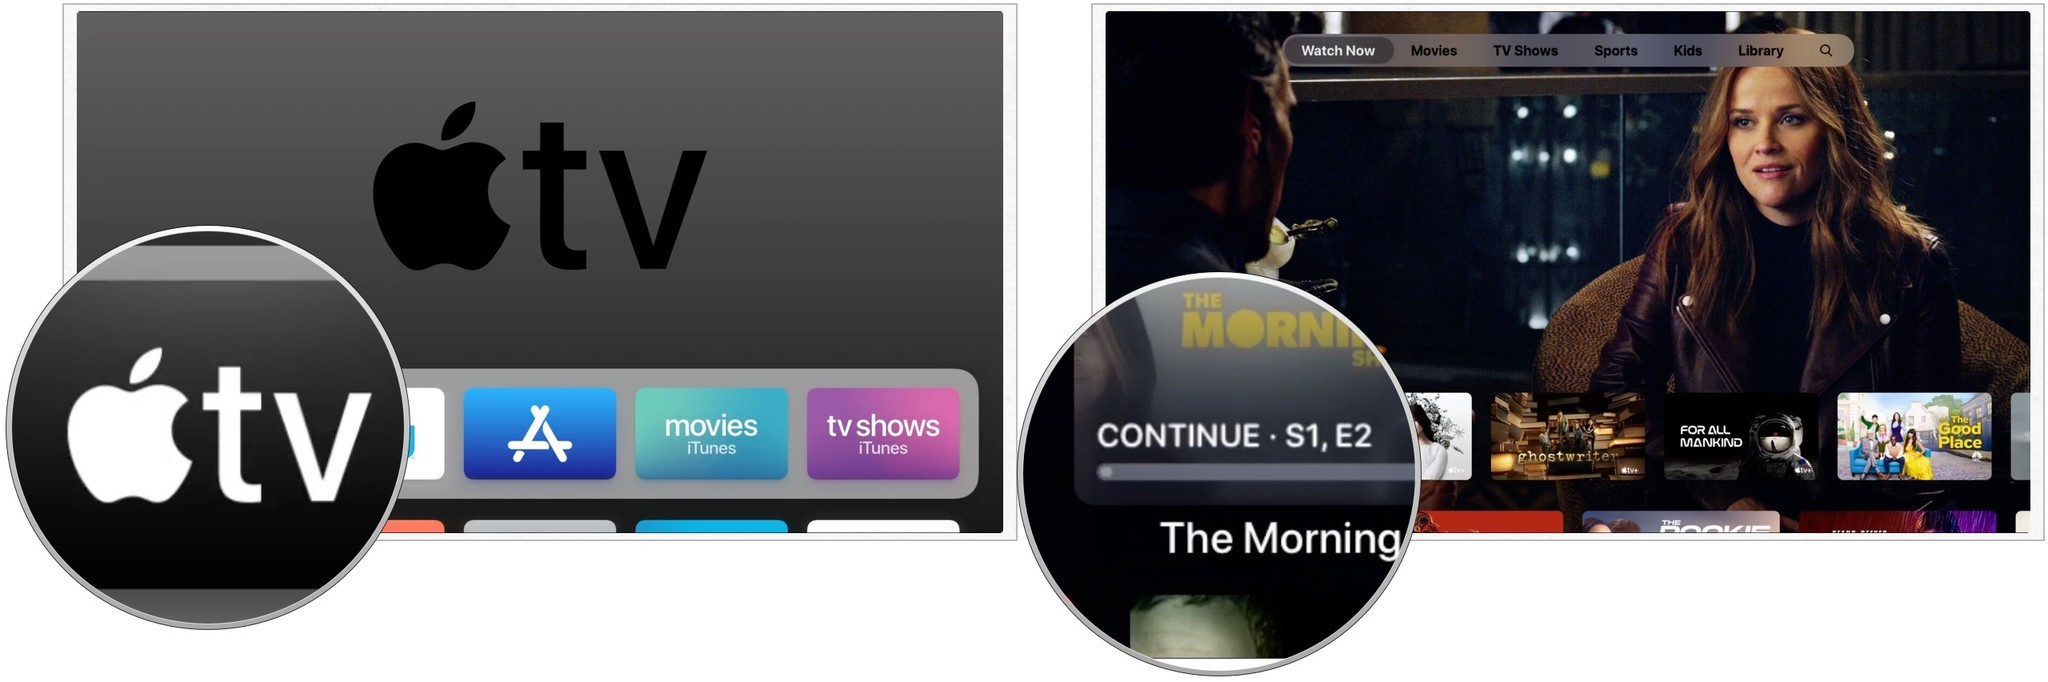 Чтобы посмотреть на Apple TV, коснитесь приложения TV, щелкните шоу Apple TV+ в списке «На очереди».  Вы также можете прокрутить вниз до пункта «Что смотреть» и найти что посмотреть.  Нажмите «Воспроизвести эпизод».